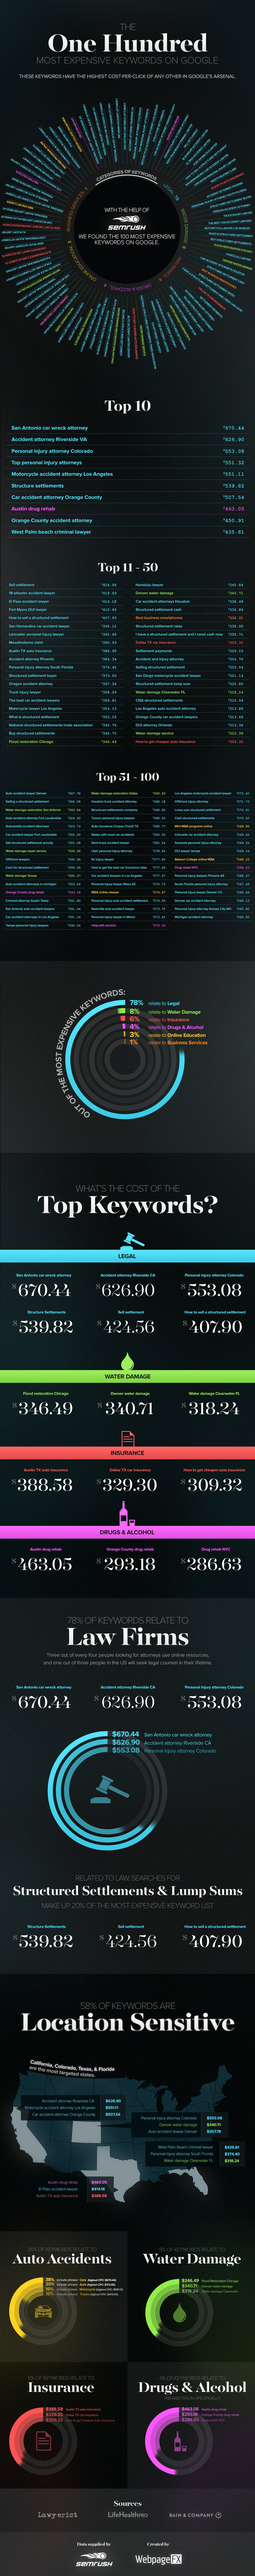 Die 100 teuersten Keywords für Google AdWords Kampagnen